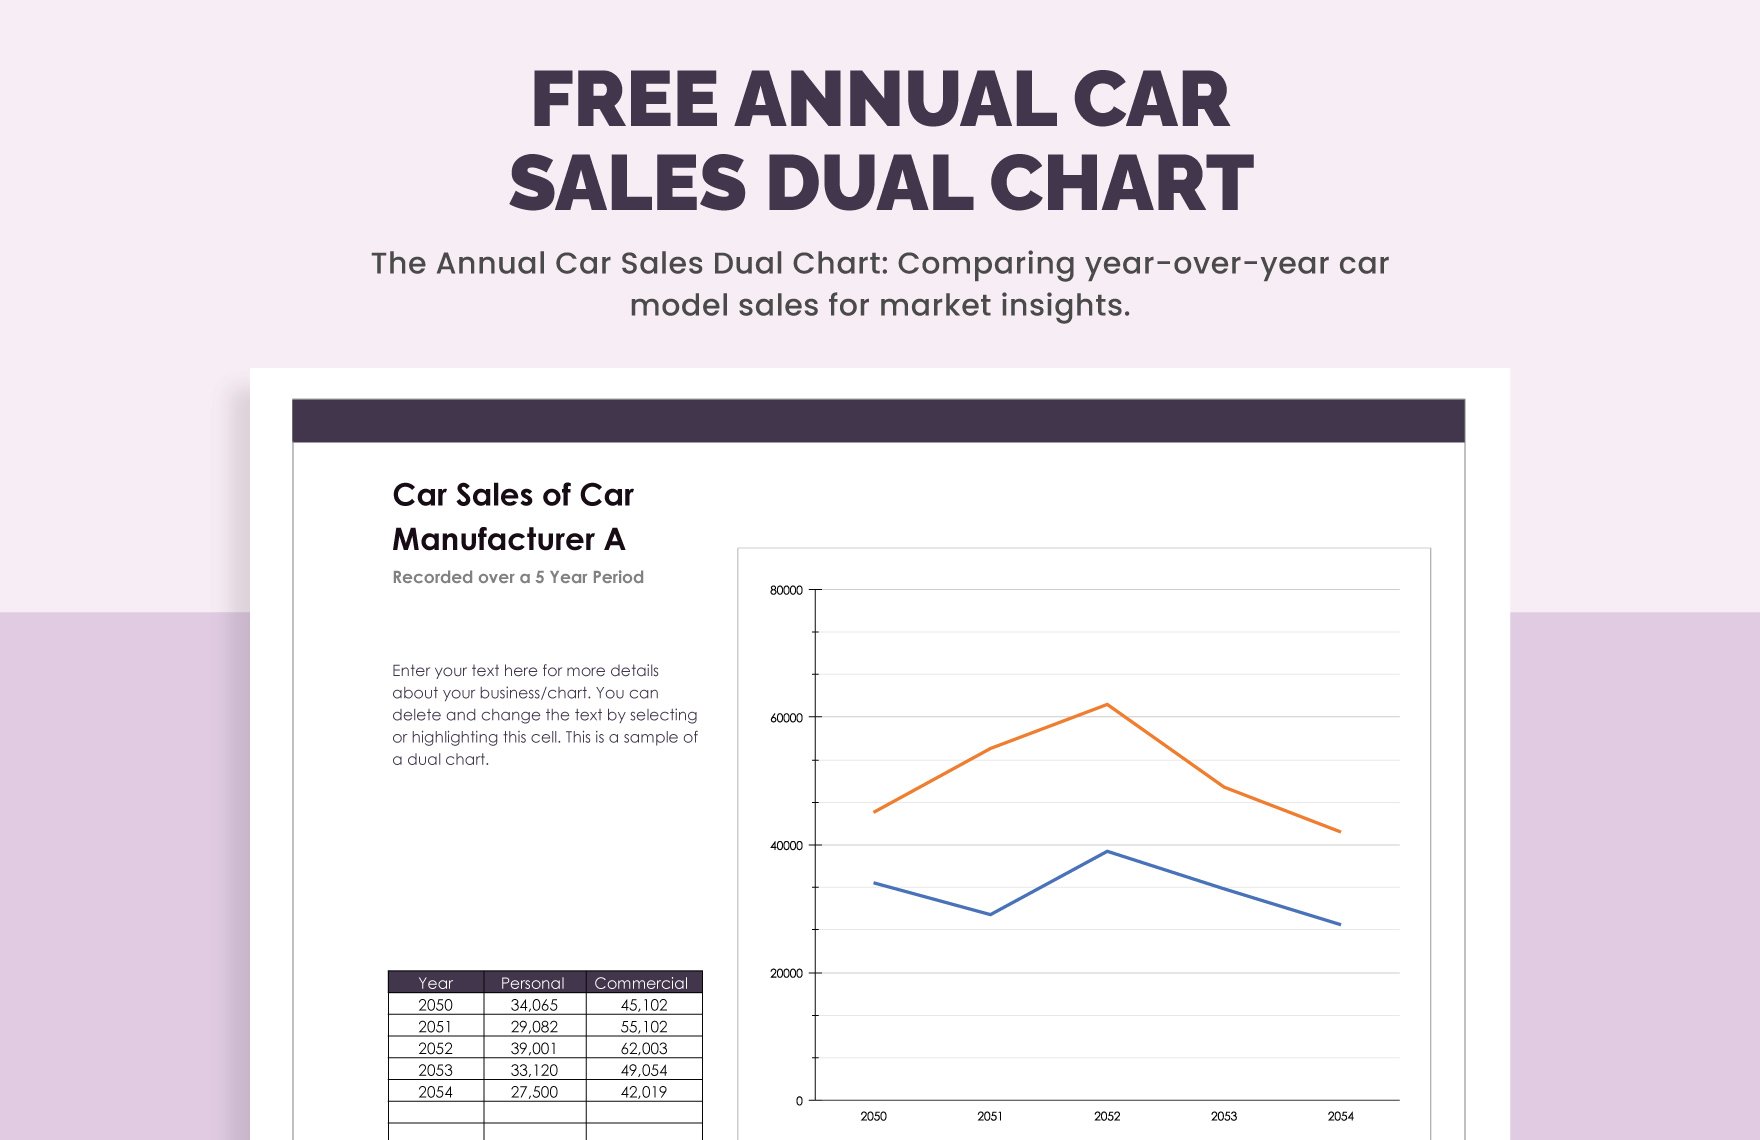 Free Annual Car Sales Dual Chart